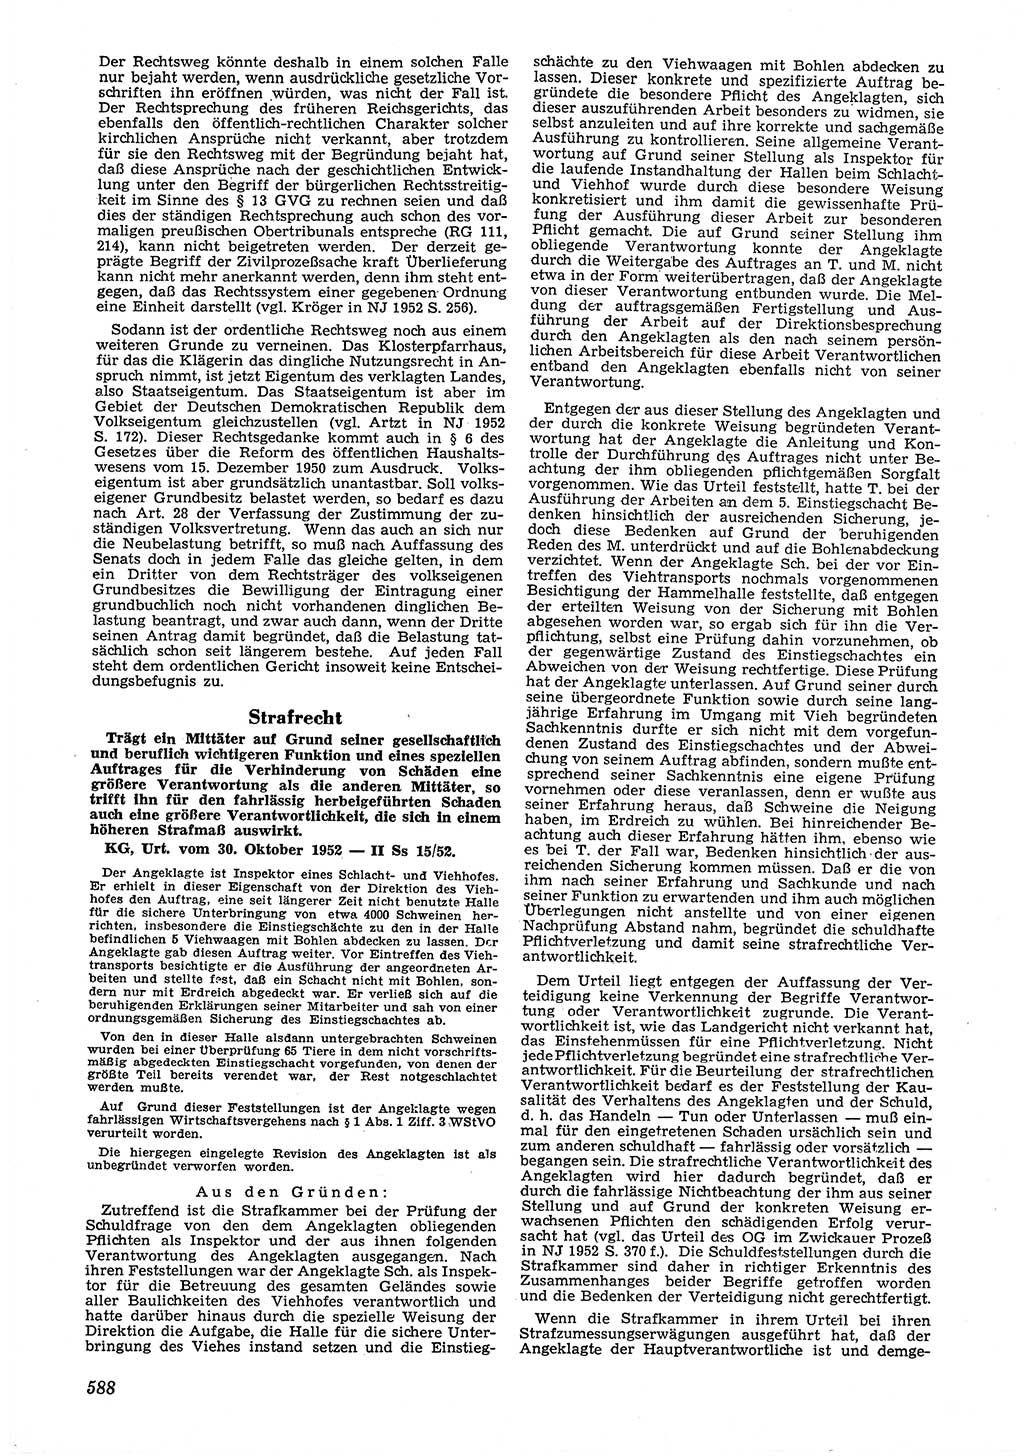 Neue Justiz (NJ), Zeitschrift für Recht und Rechtswissenschaft [Deutsche Demokratische Republik (DDR)], 6. Jahrgang 1952, Seite 588 (NJ DDR 1952, S. 588)